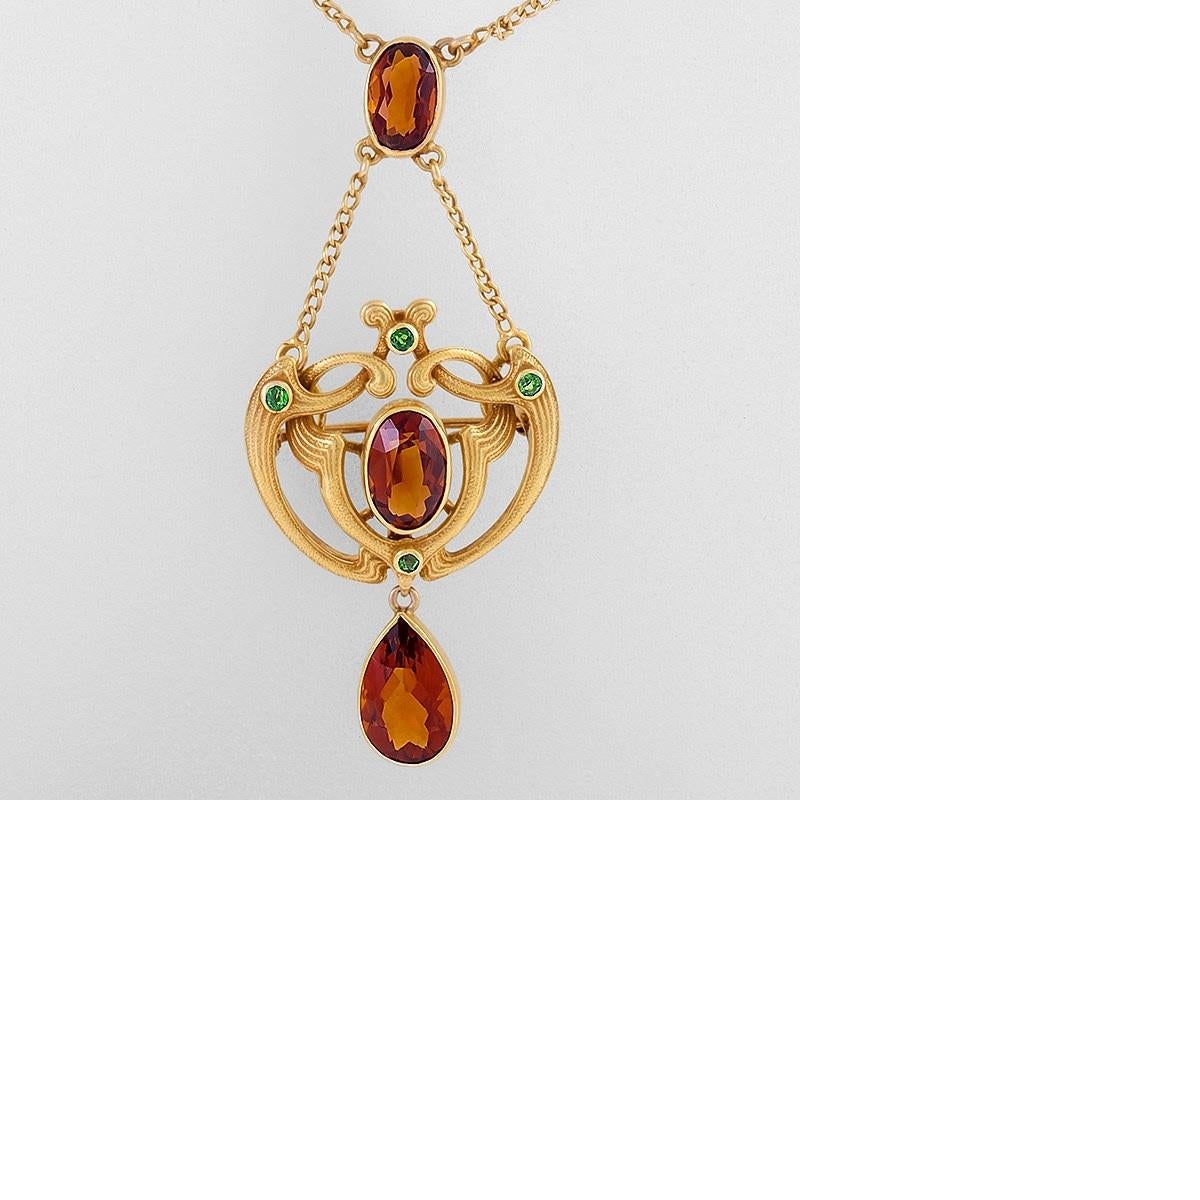 Women's Art Nouveau Pendant Necklace with Citrine and Demantoid Garnet